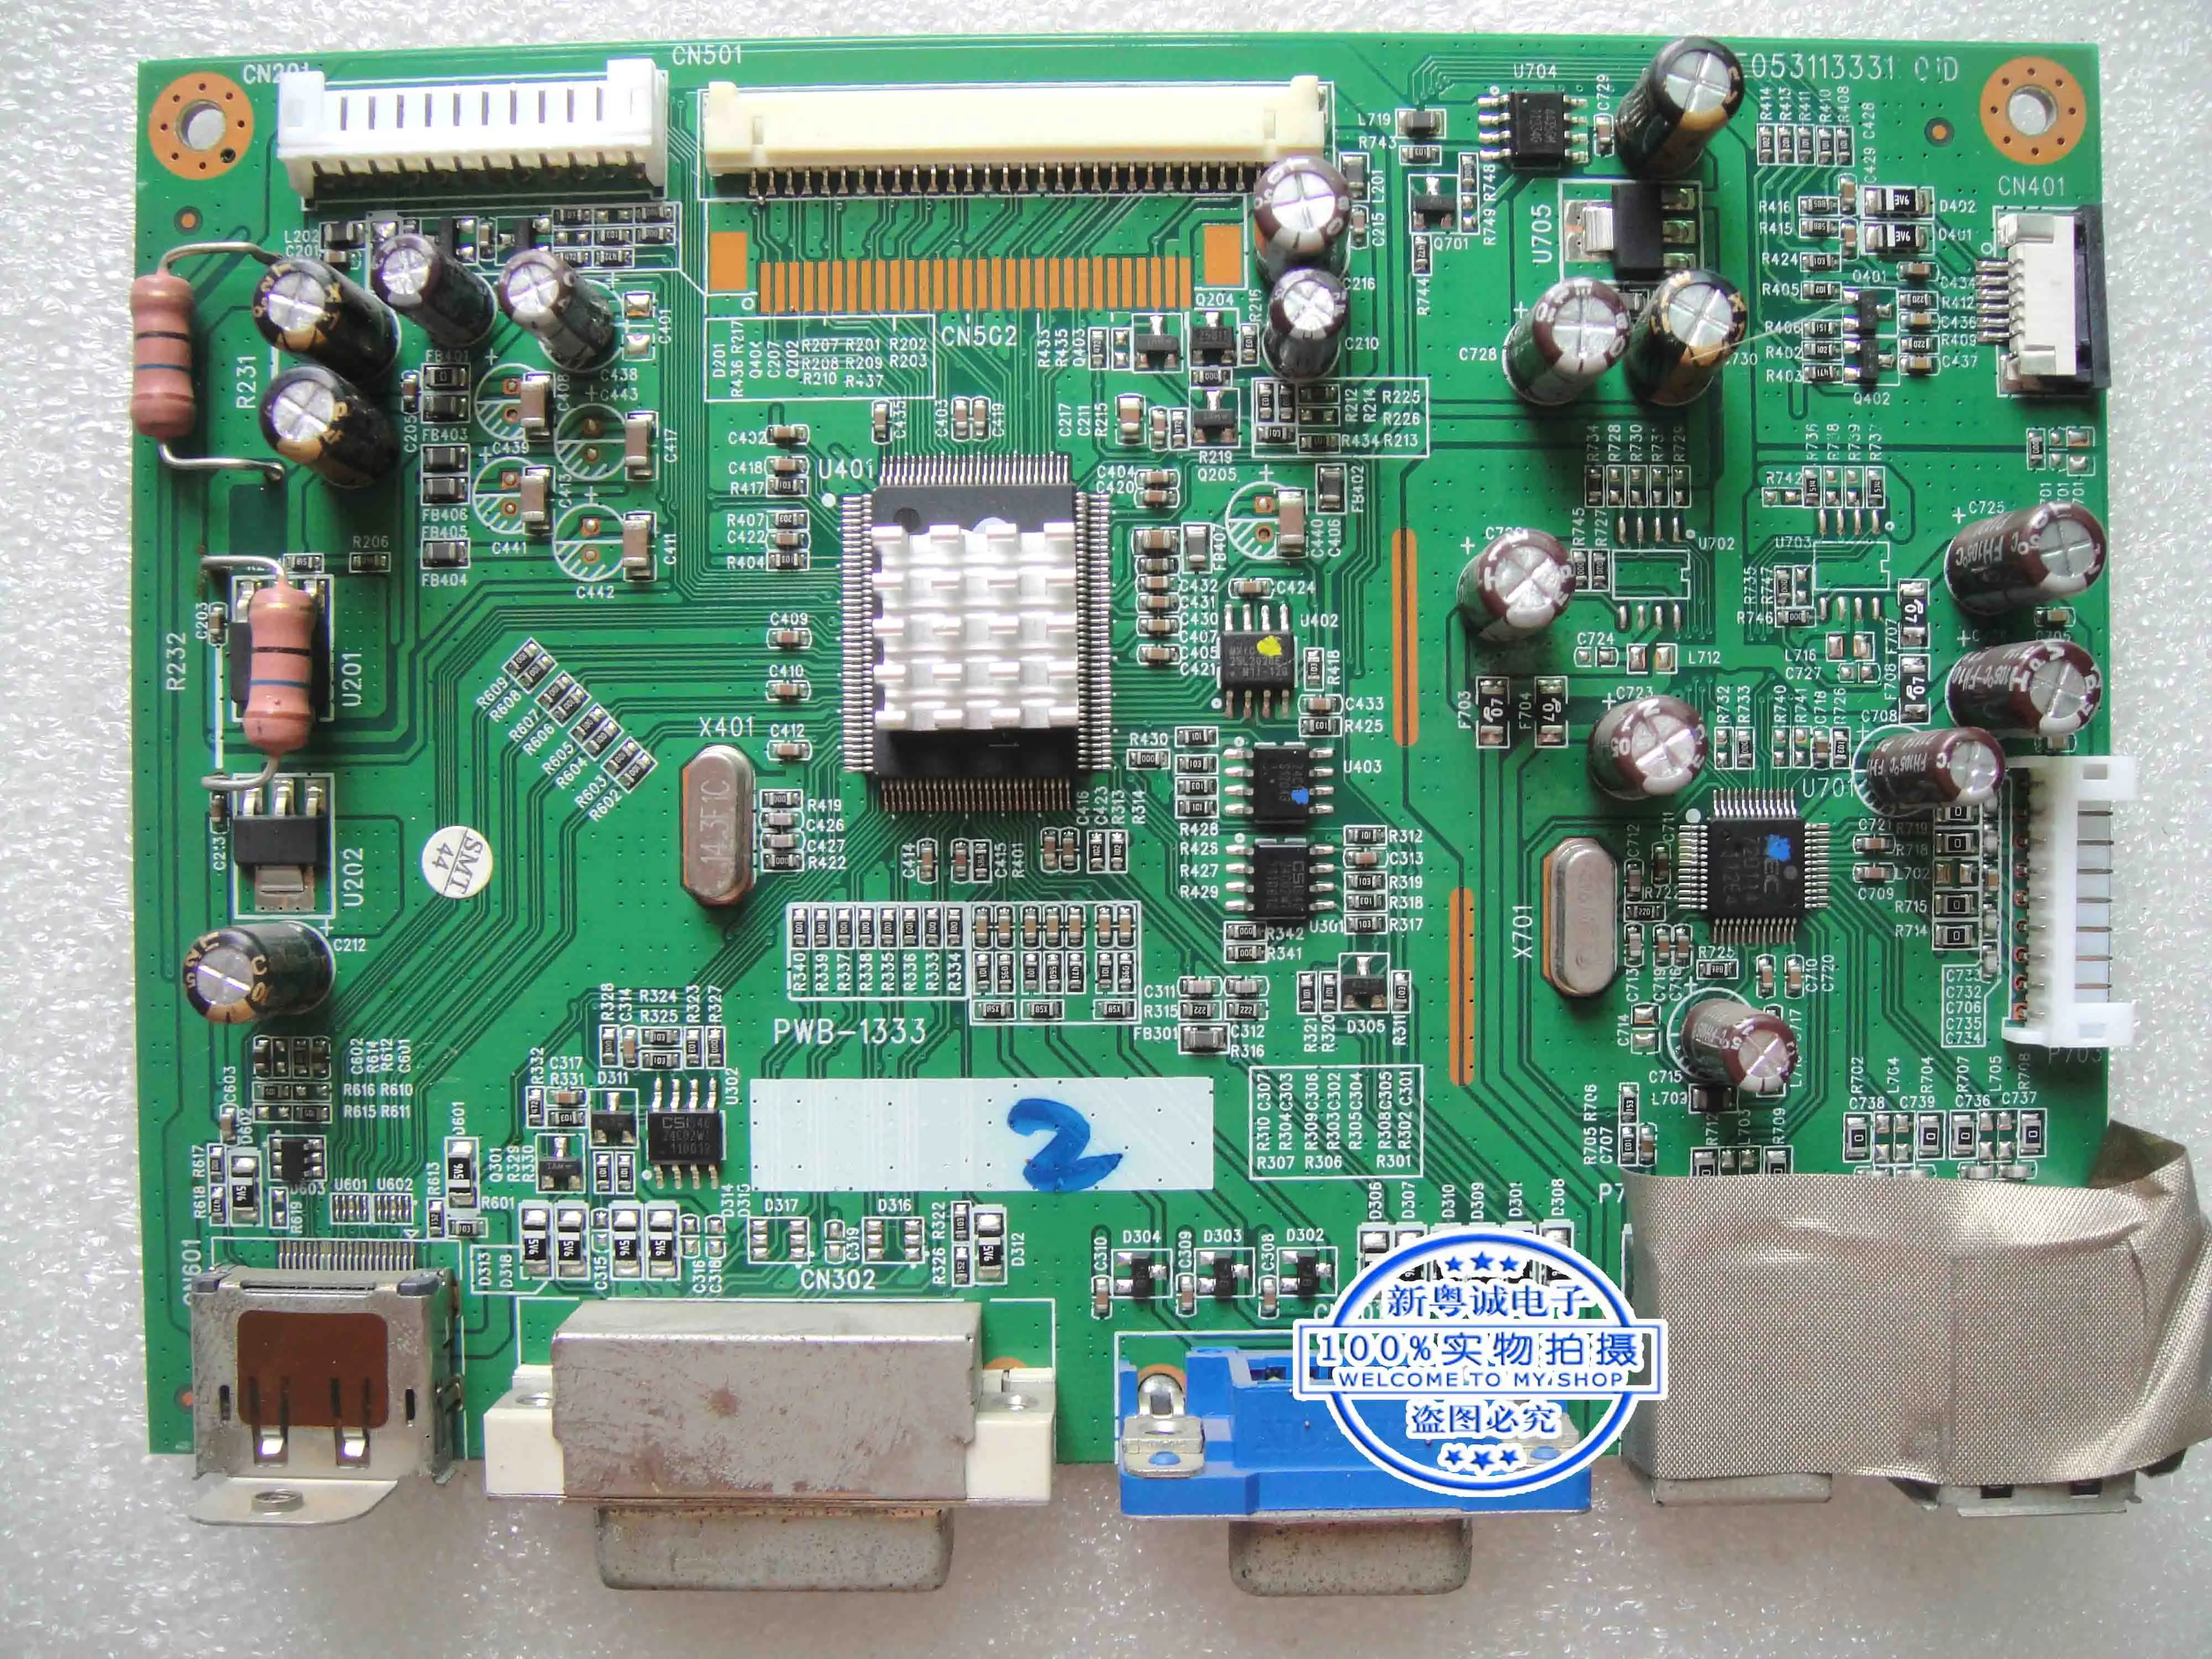 HP ZR24W PWB-1333-1 B E053113331 LCD Monitor  Board 